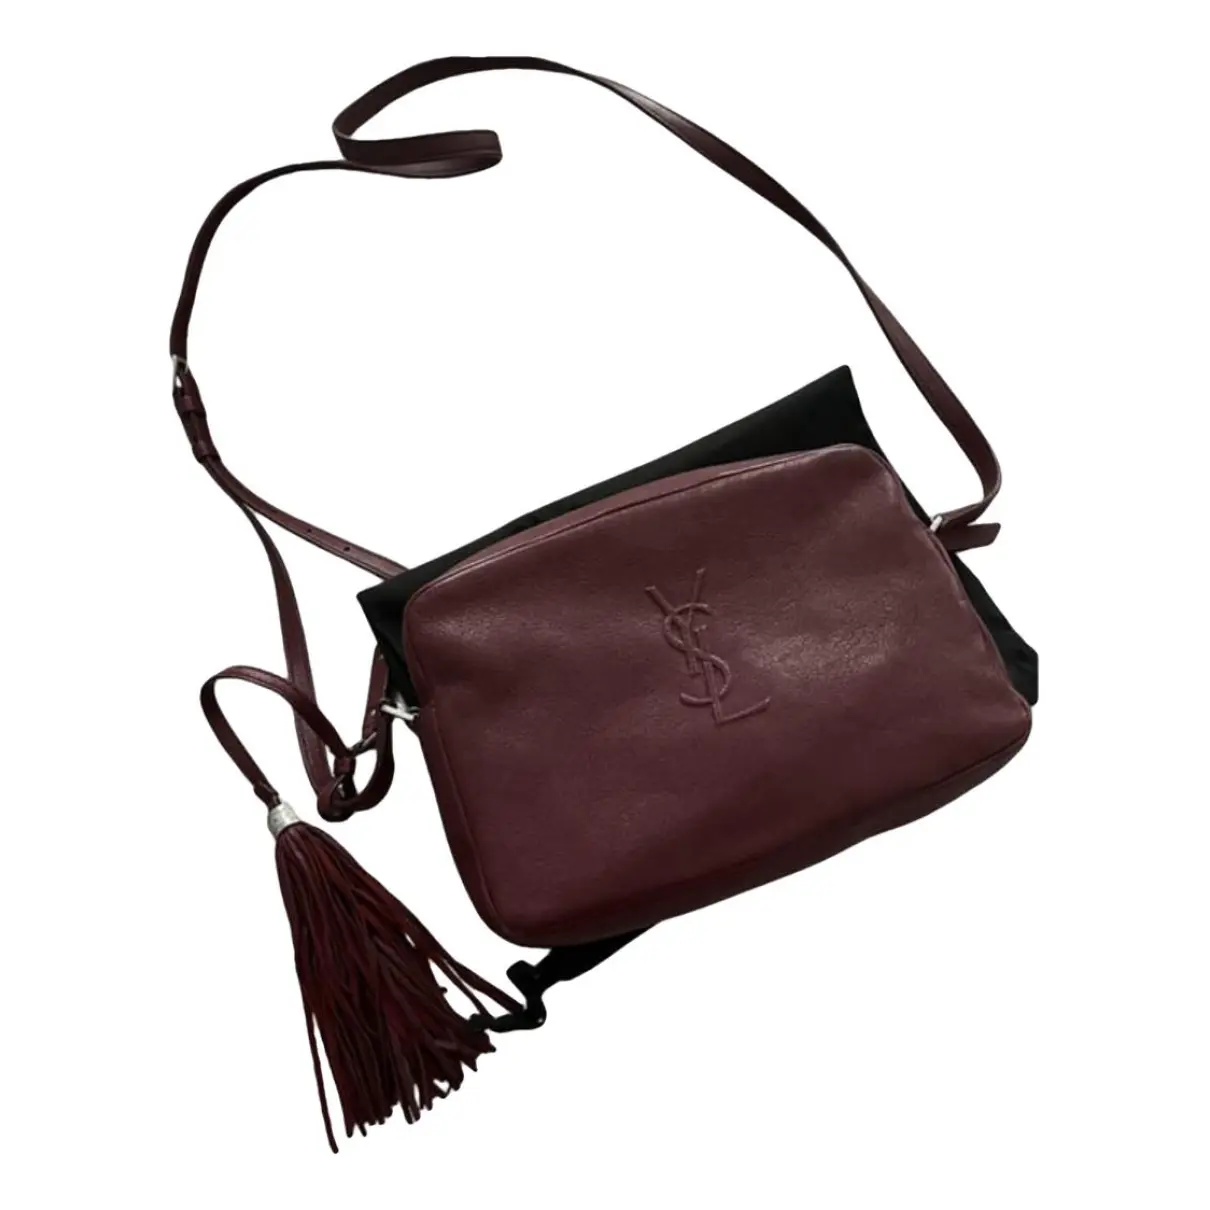 Lou leather handbag